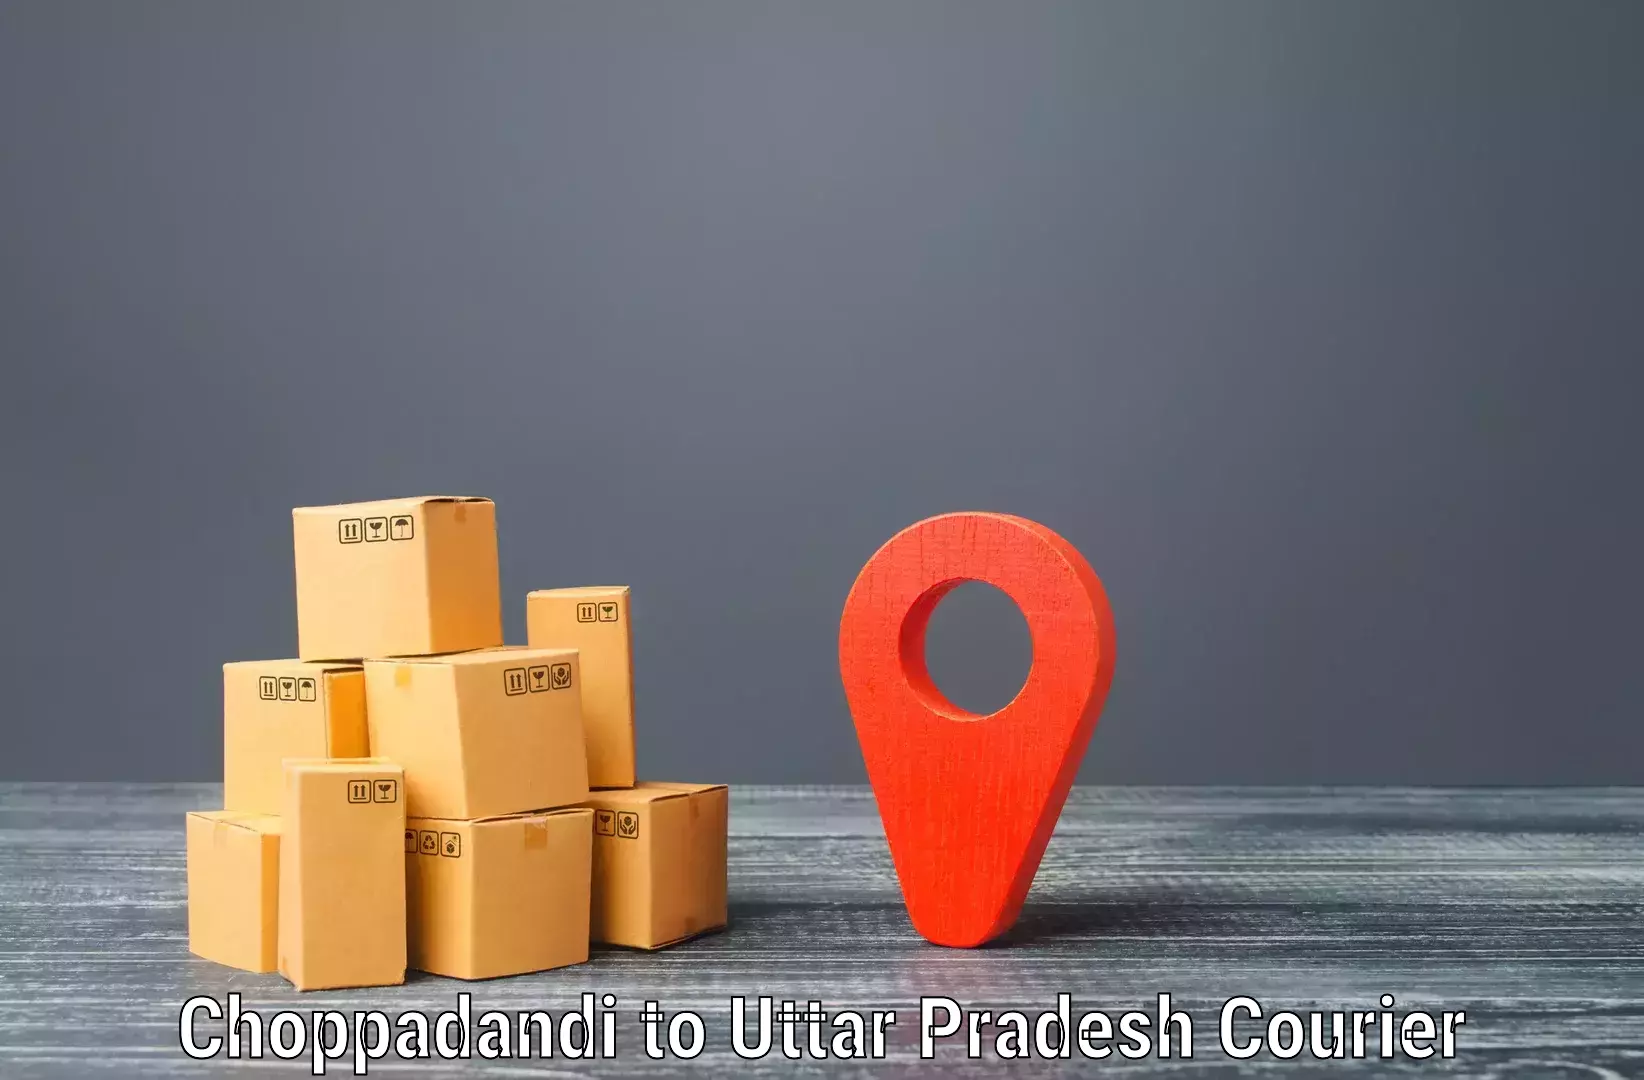 On-demand shipping options Choppadandi to Khalilabad